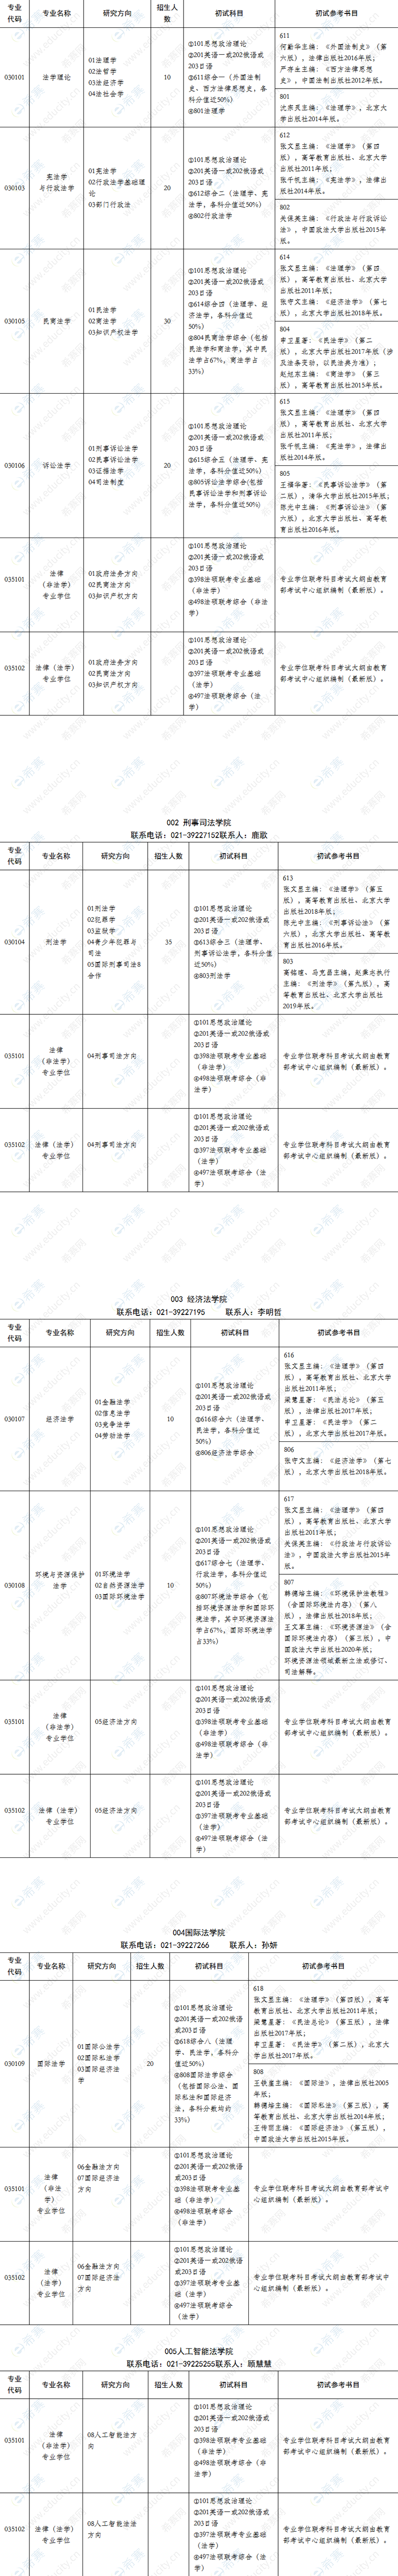 2021上海政法学院法硕招生目录.png